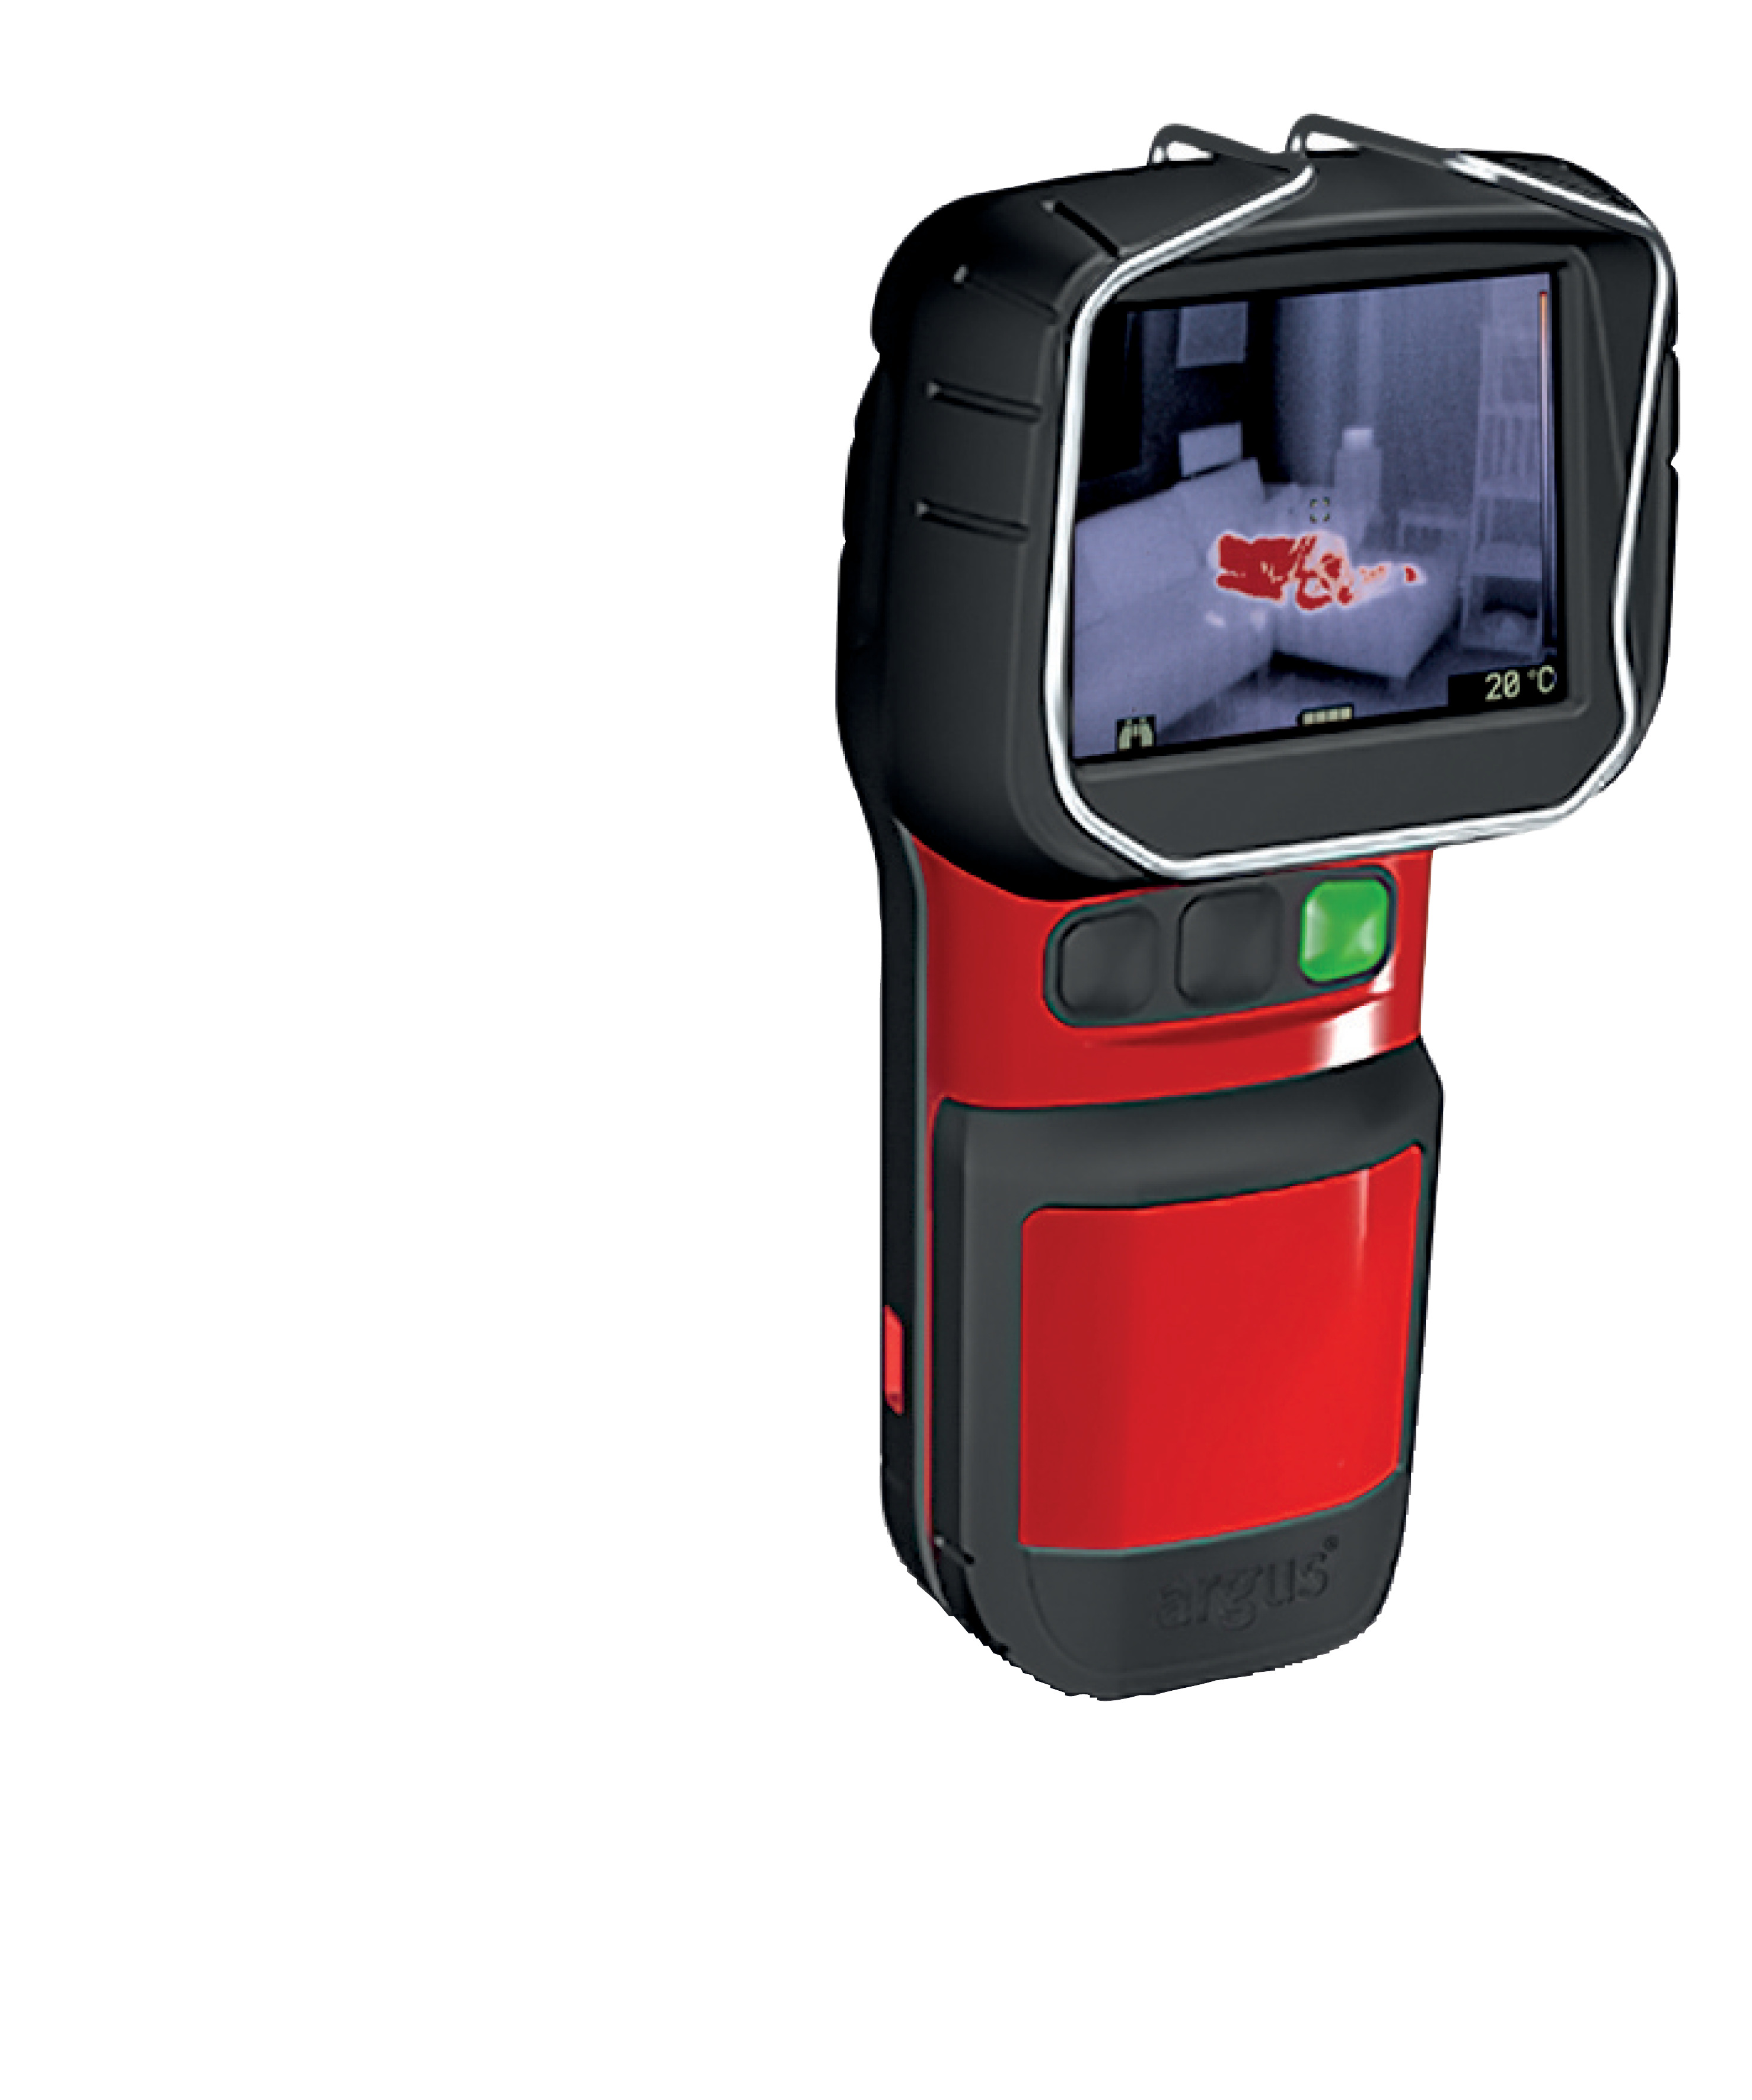 Wärmebildkamera ARGUS Mi-TIC -EL3-, 3,5 Zoll Display mit 3-Knopf Bedienung, 384x288 (340x240) Pixel - kleinste, hochauflösende Kamera für den Feuerwehr-Einsatz. Extrem leicht: ca. 760 g (Kamera ohne Akku) - extrem klein: paßt in jede Tasche / so groß